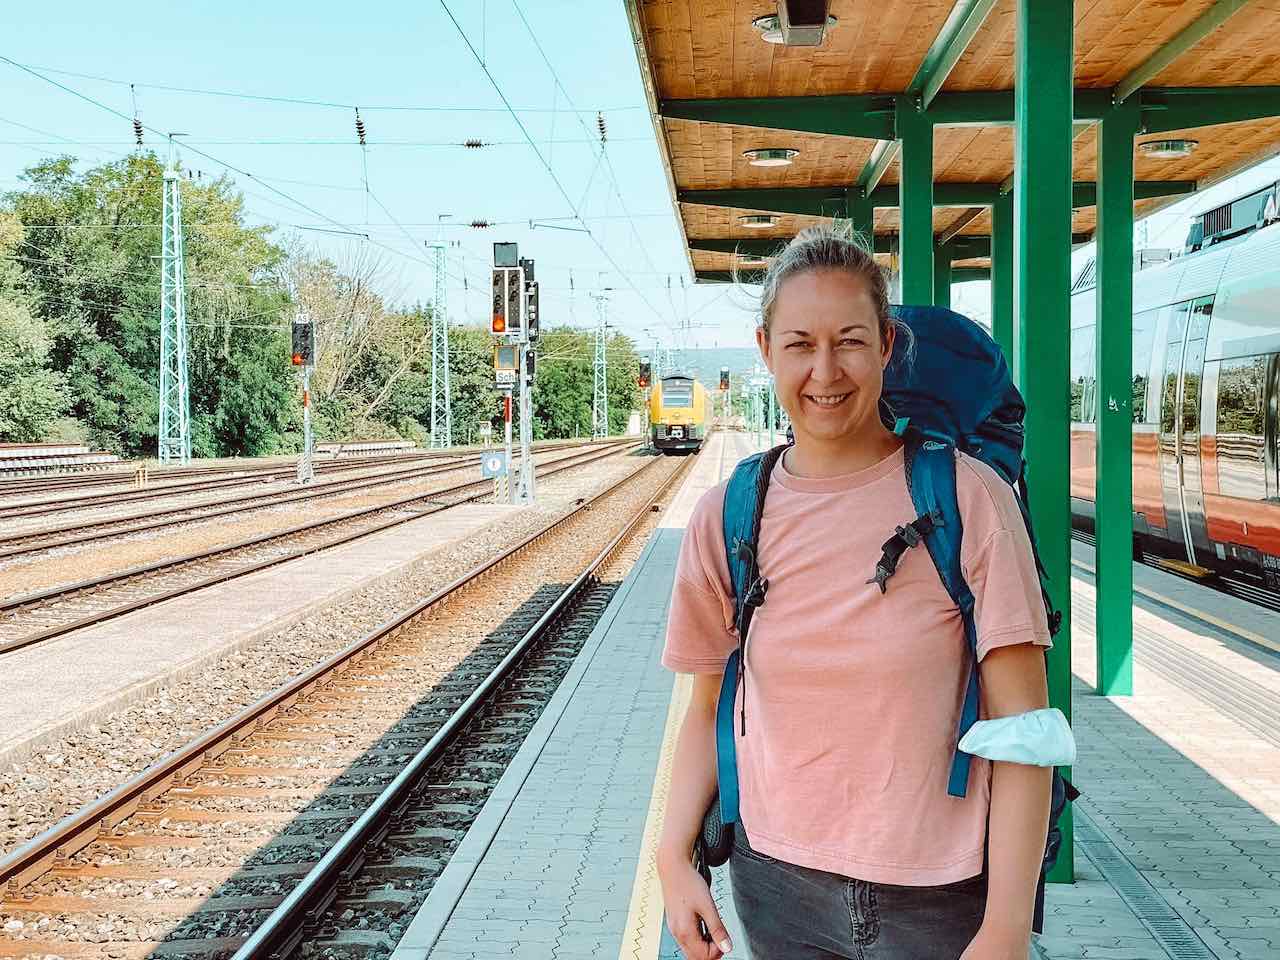 Urlaub an der Donau - Mit Bus und Bahn in 6 Etappen bis Budapest